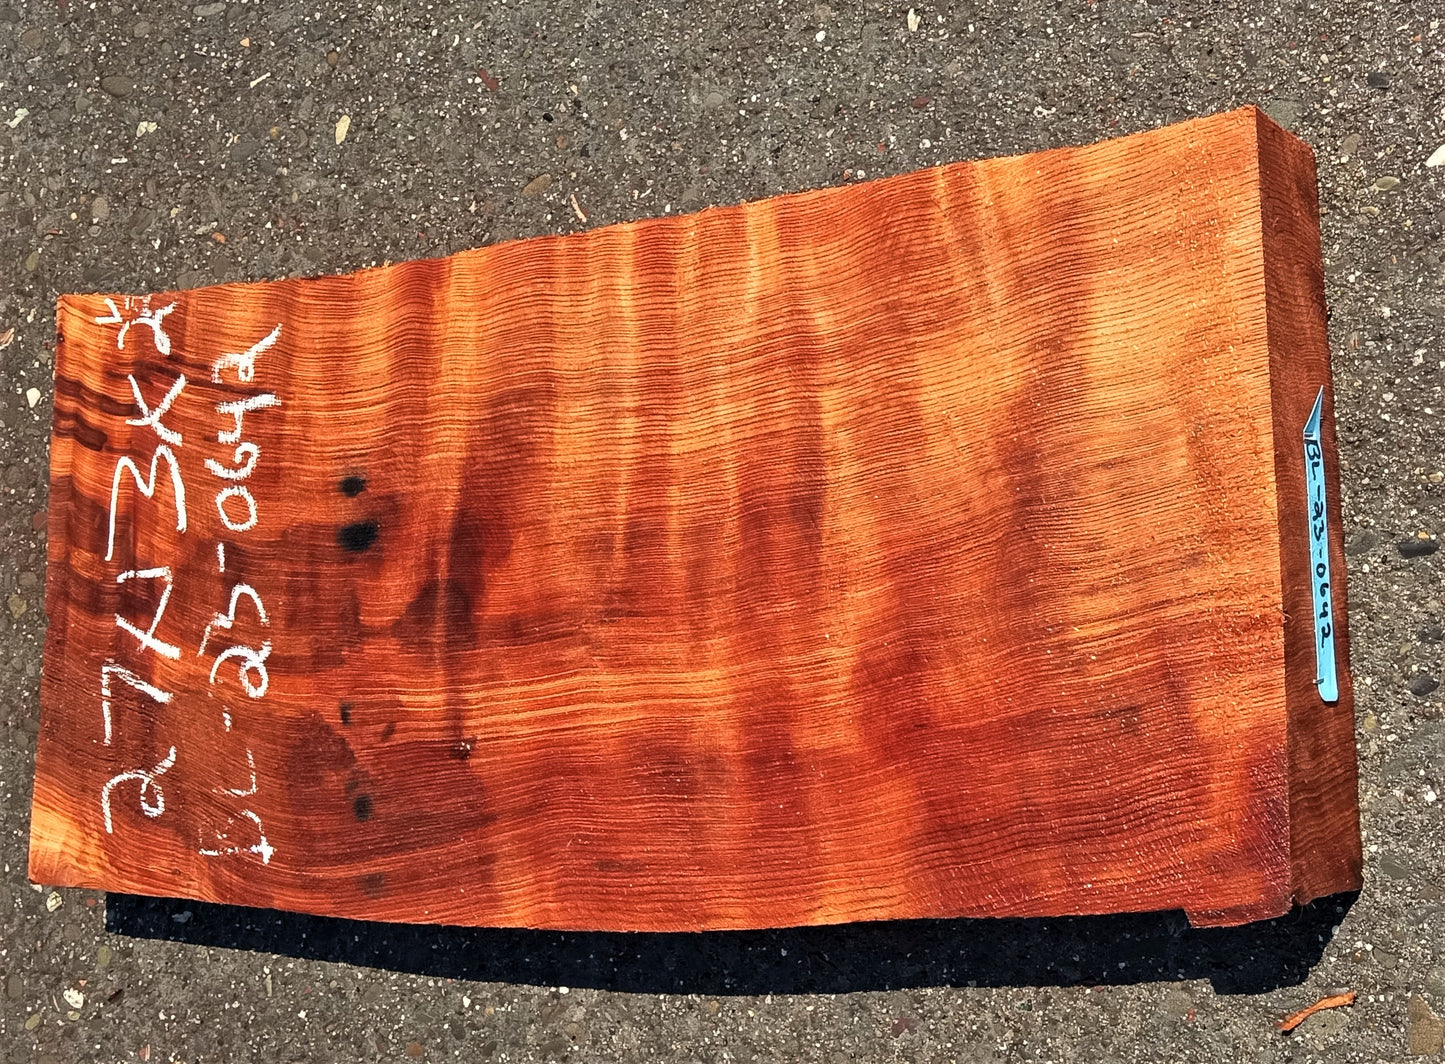 curly redwood | bowl turning | wood turning | DIY | guitar blank | bl23-0642